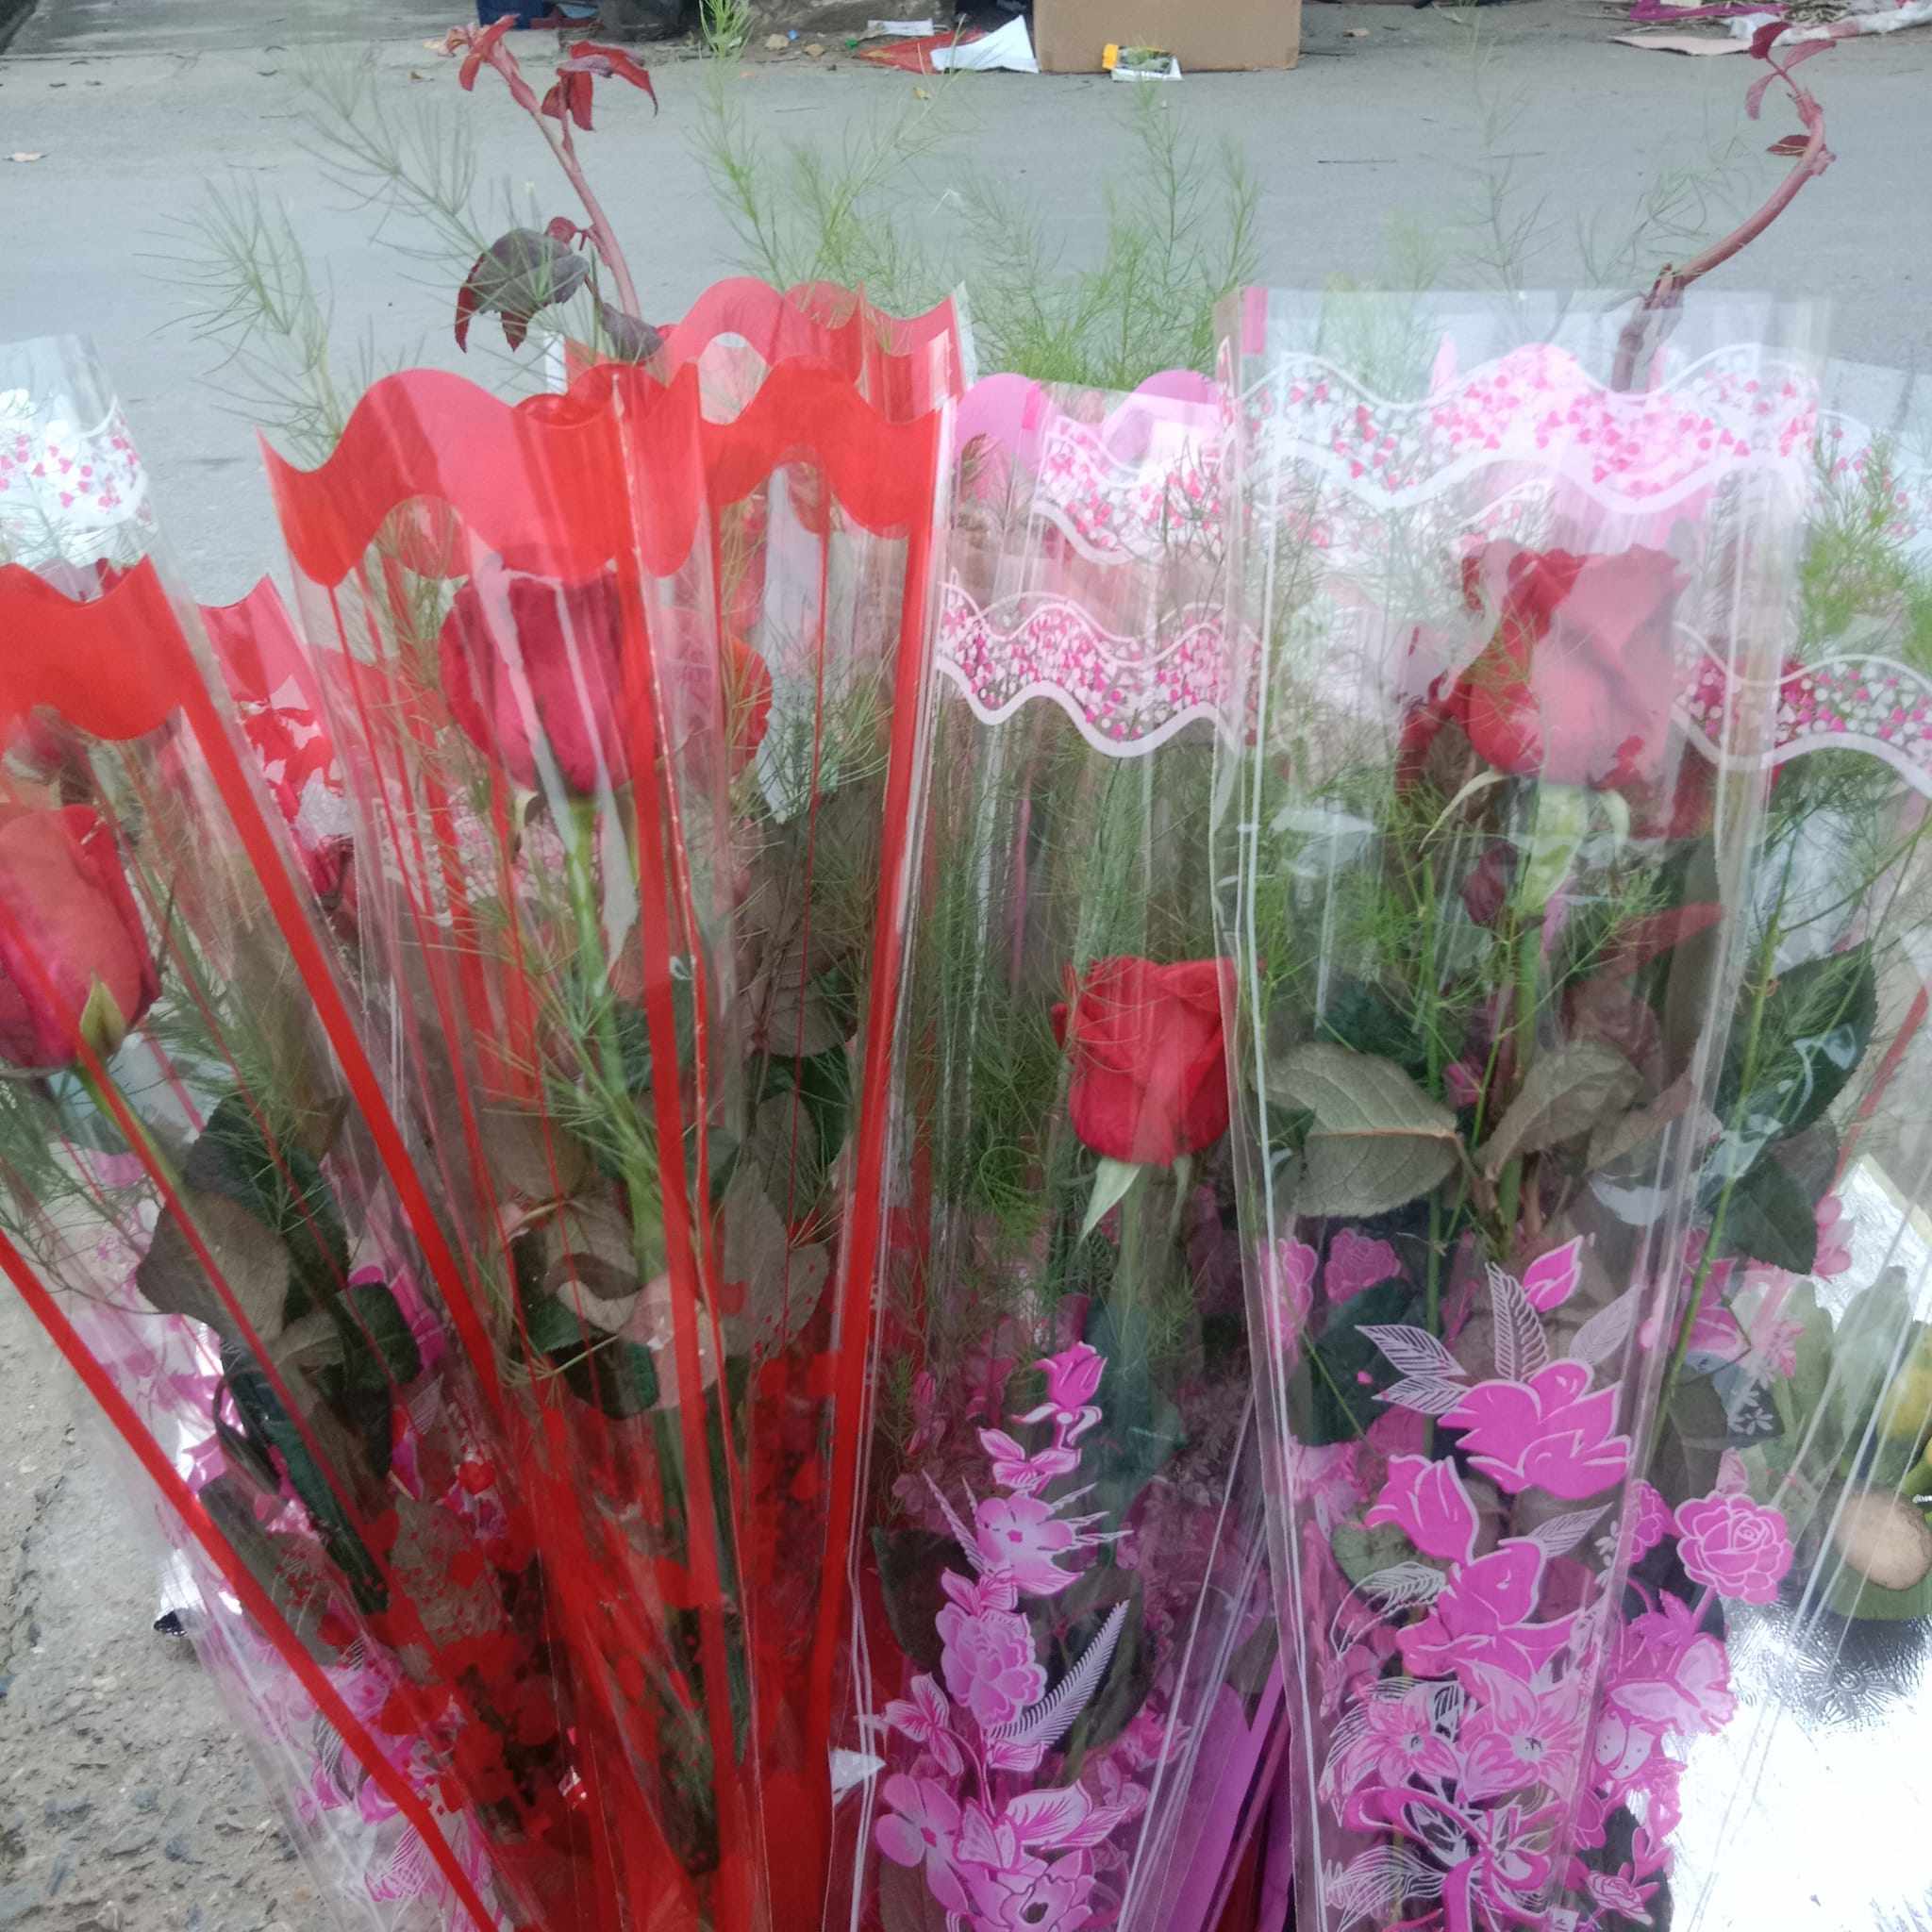 Theo chị Thiết - tiểu thương tại chợ ở Tiên Lữ (Hưng Yên), giá hoa hồng bán lẻ hiện tại dao động từ 10.000 - 15.000 đồng/bông.